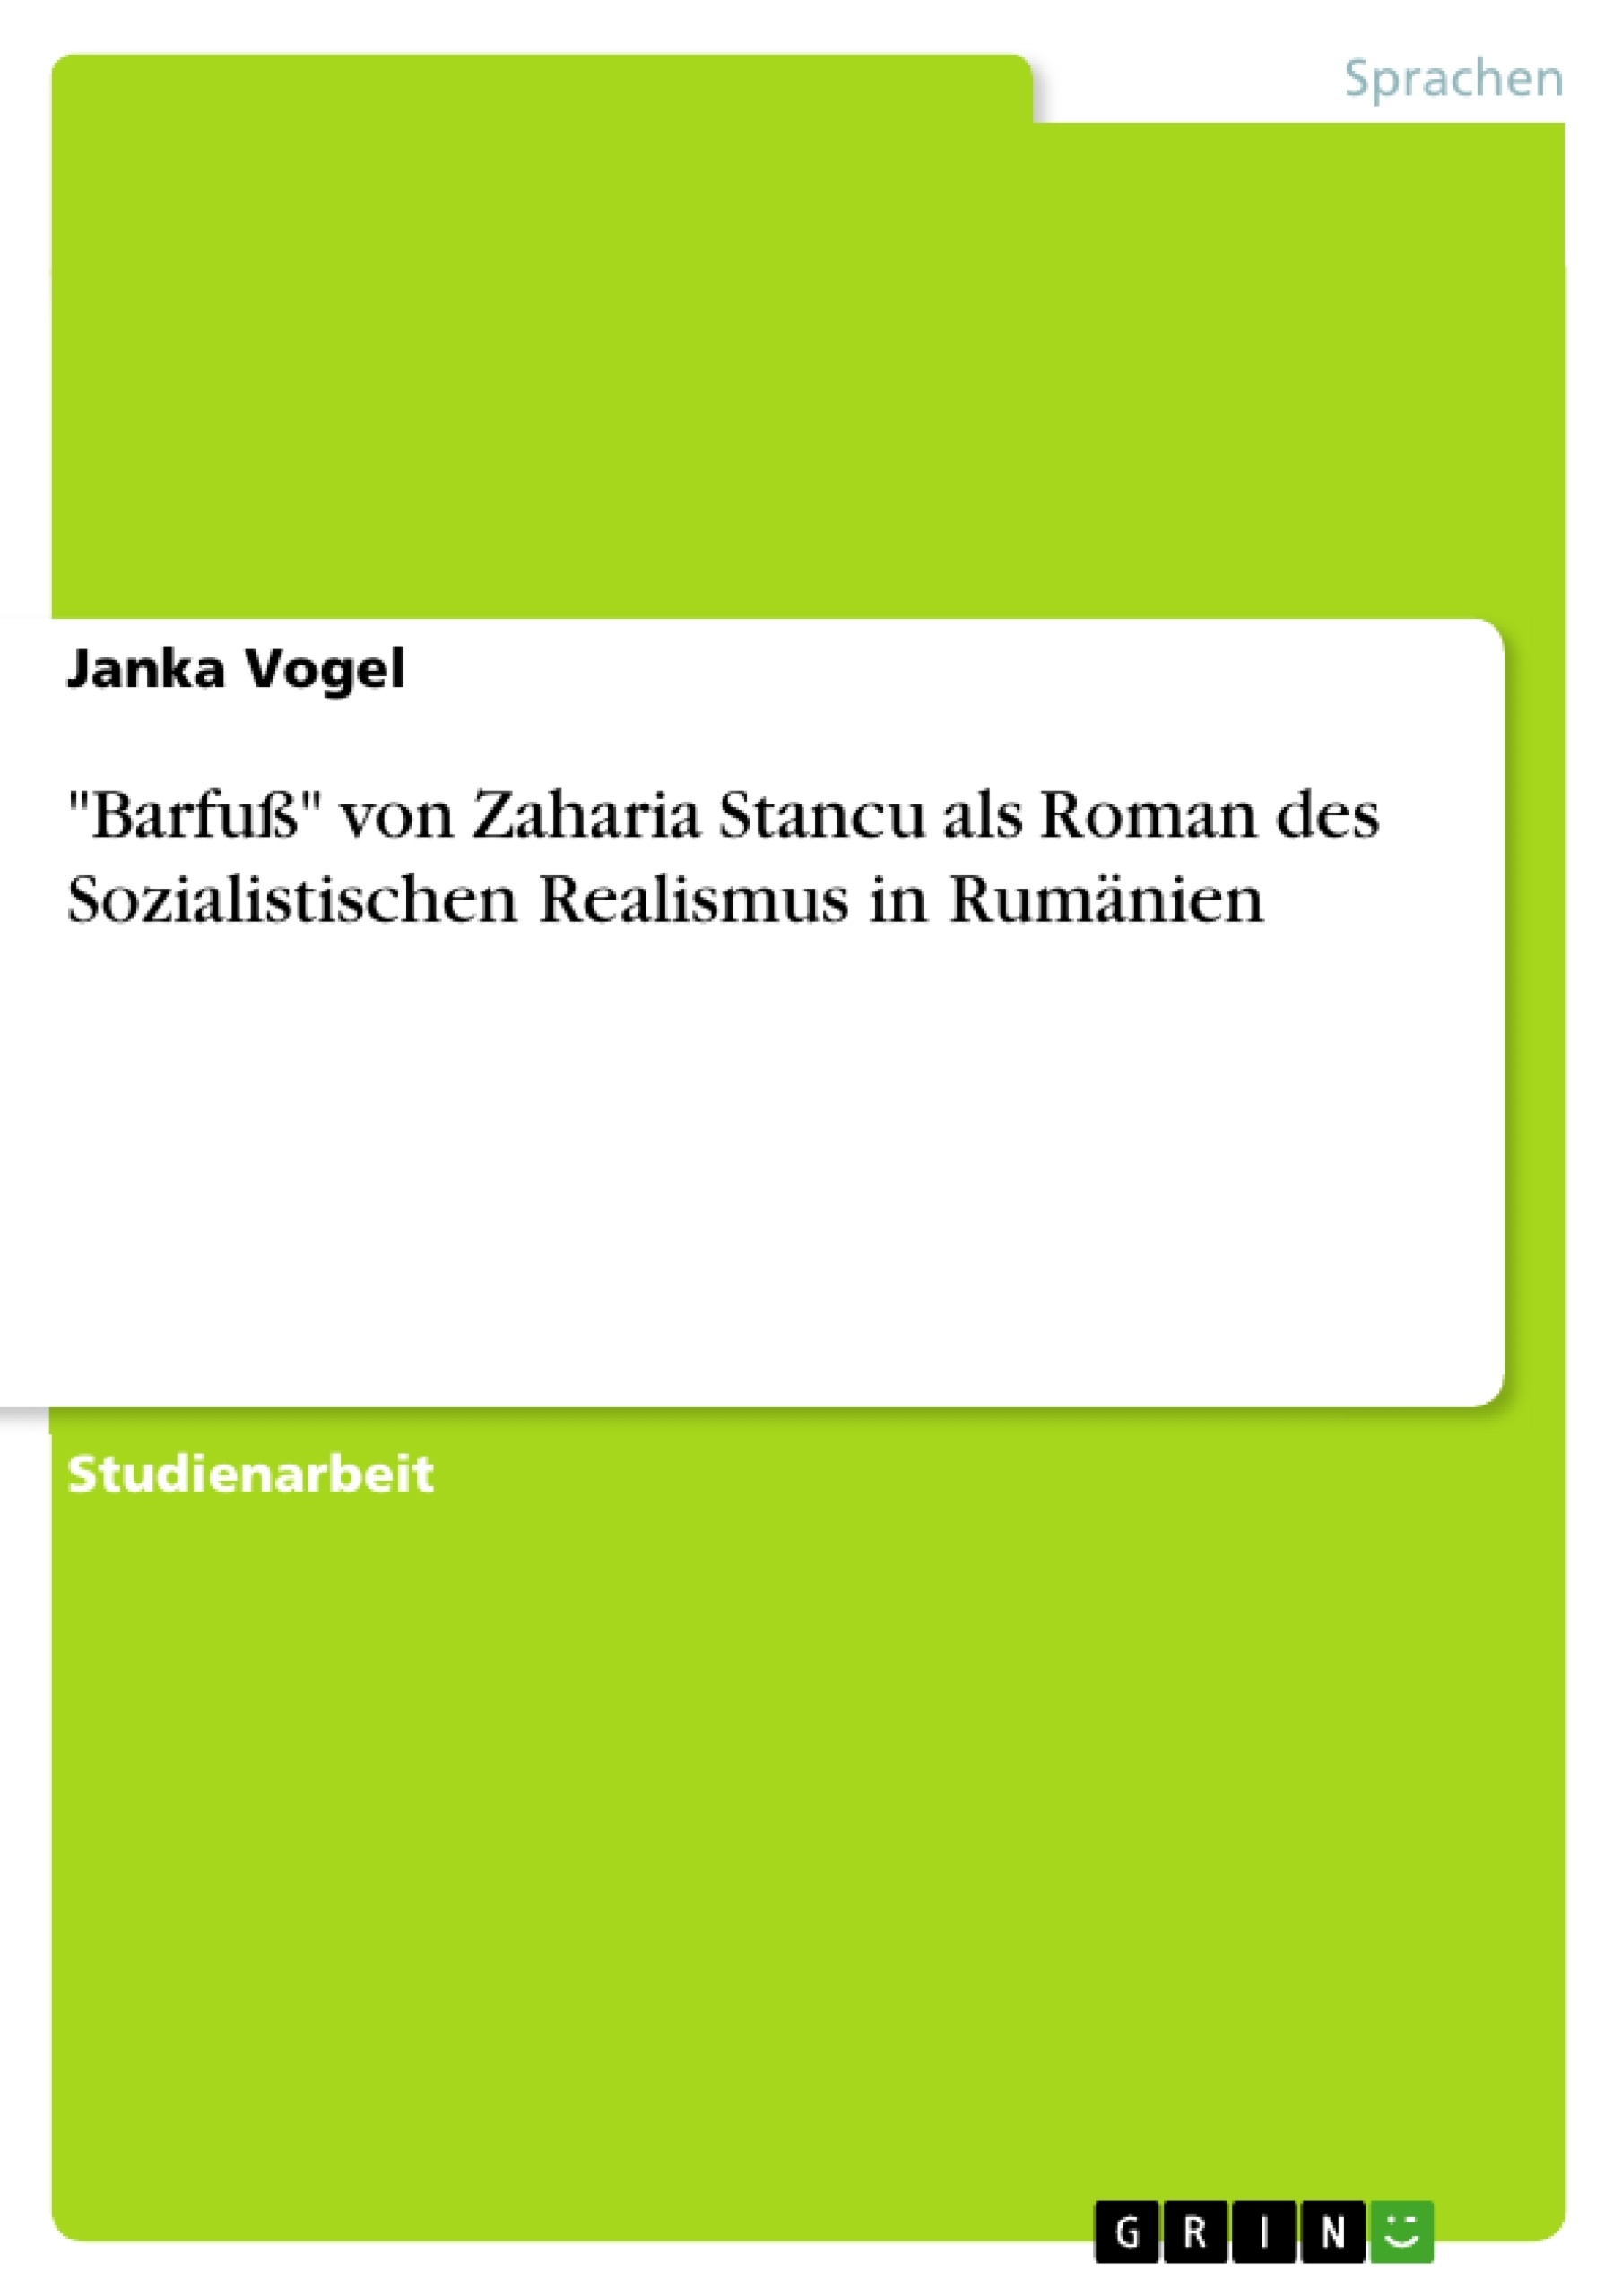 Título: "Barfuß" von Zaharia Stancu als Roman des Sozialistischen Realismus in Rumänien